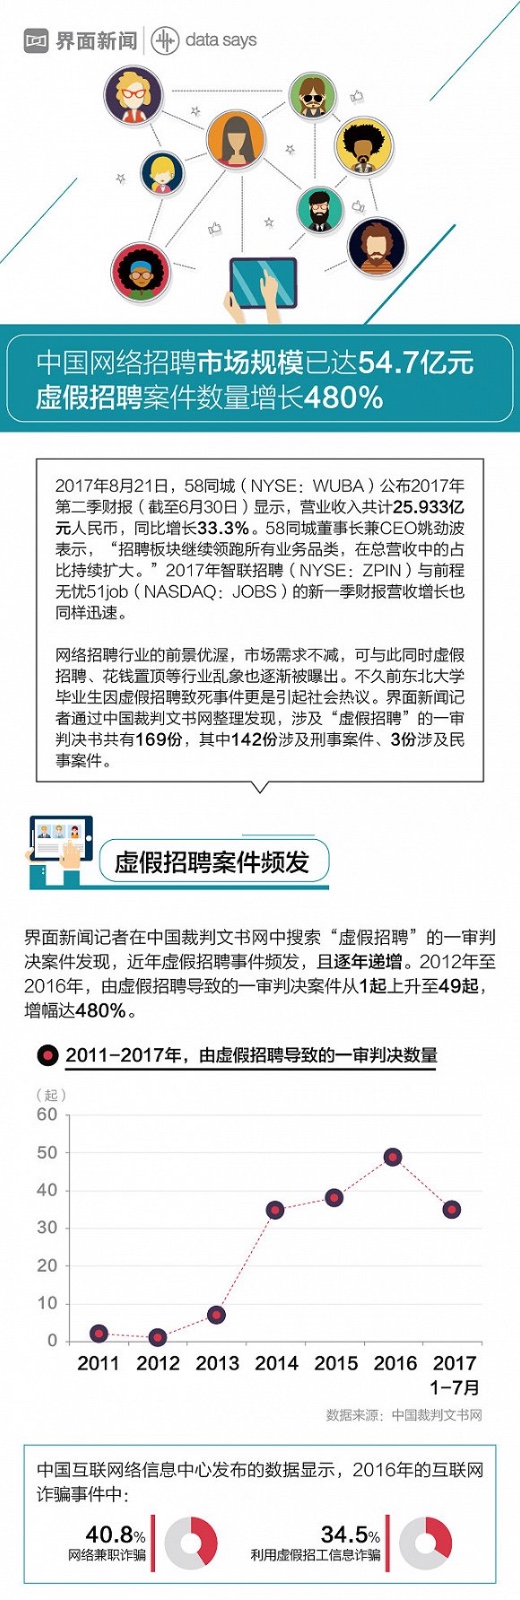 中国网络招聘市场规模已达54.7亿元 虚假招聘增长480%